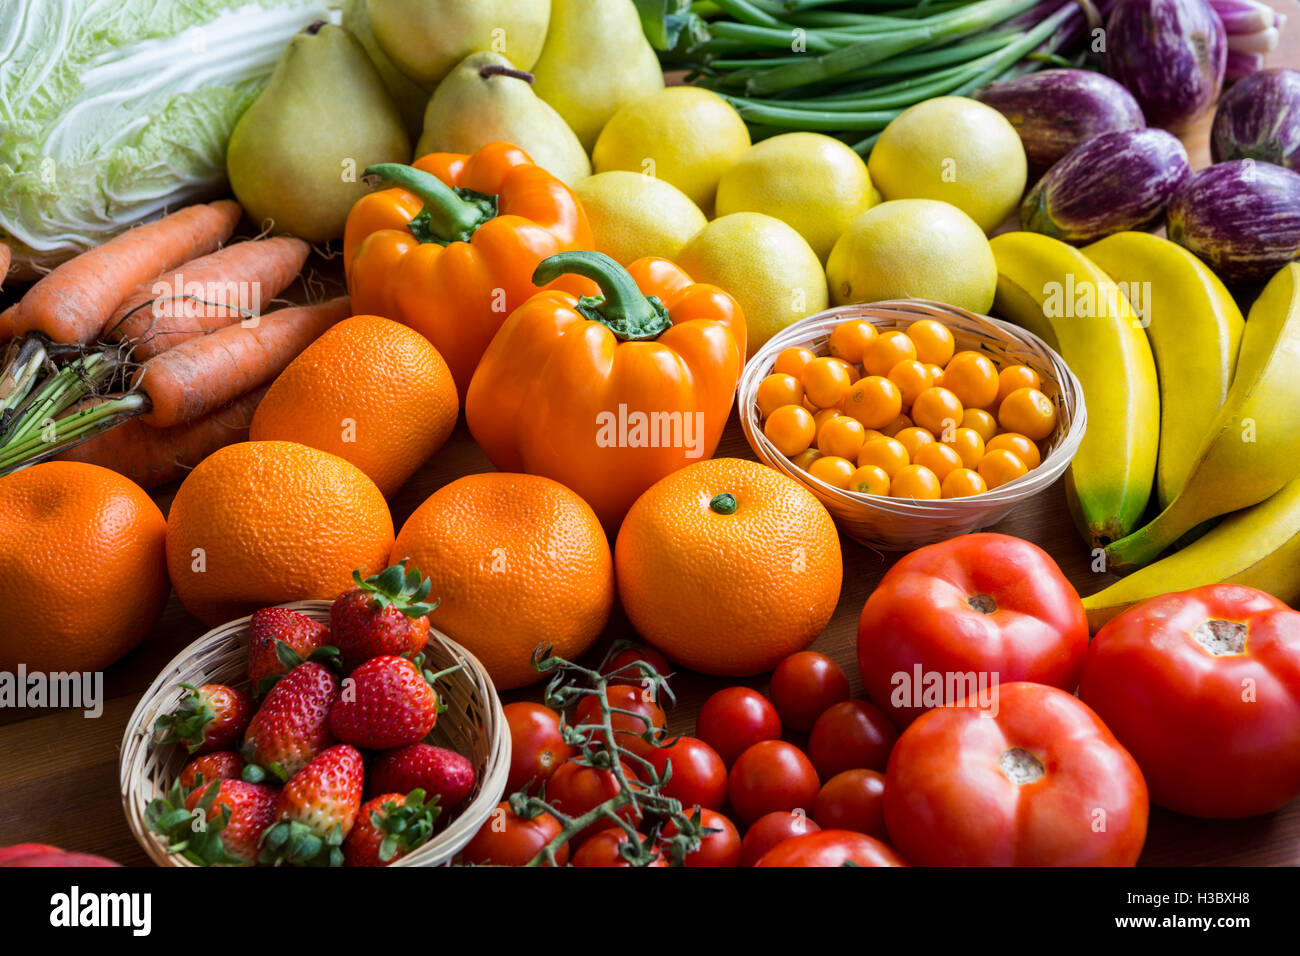 Variété de légumes et de fruits sur une étagère Banque D'Images